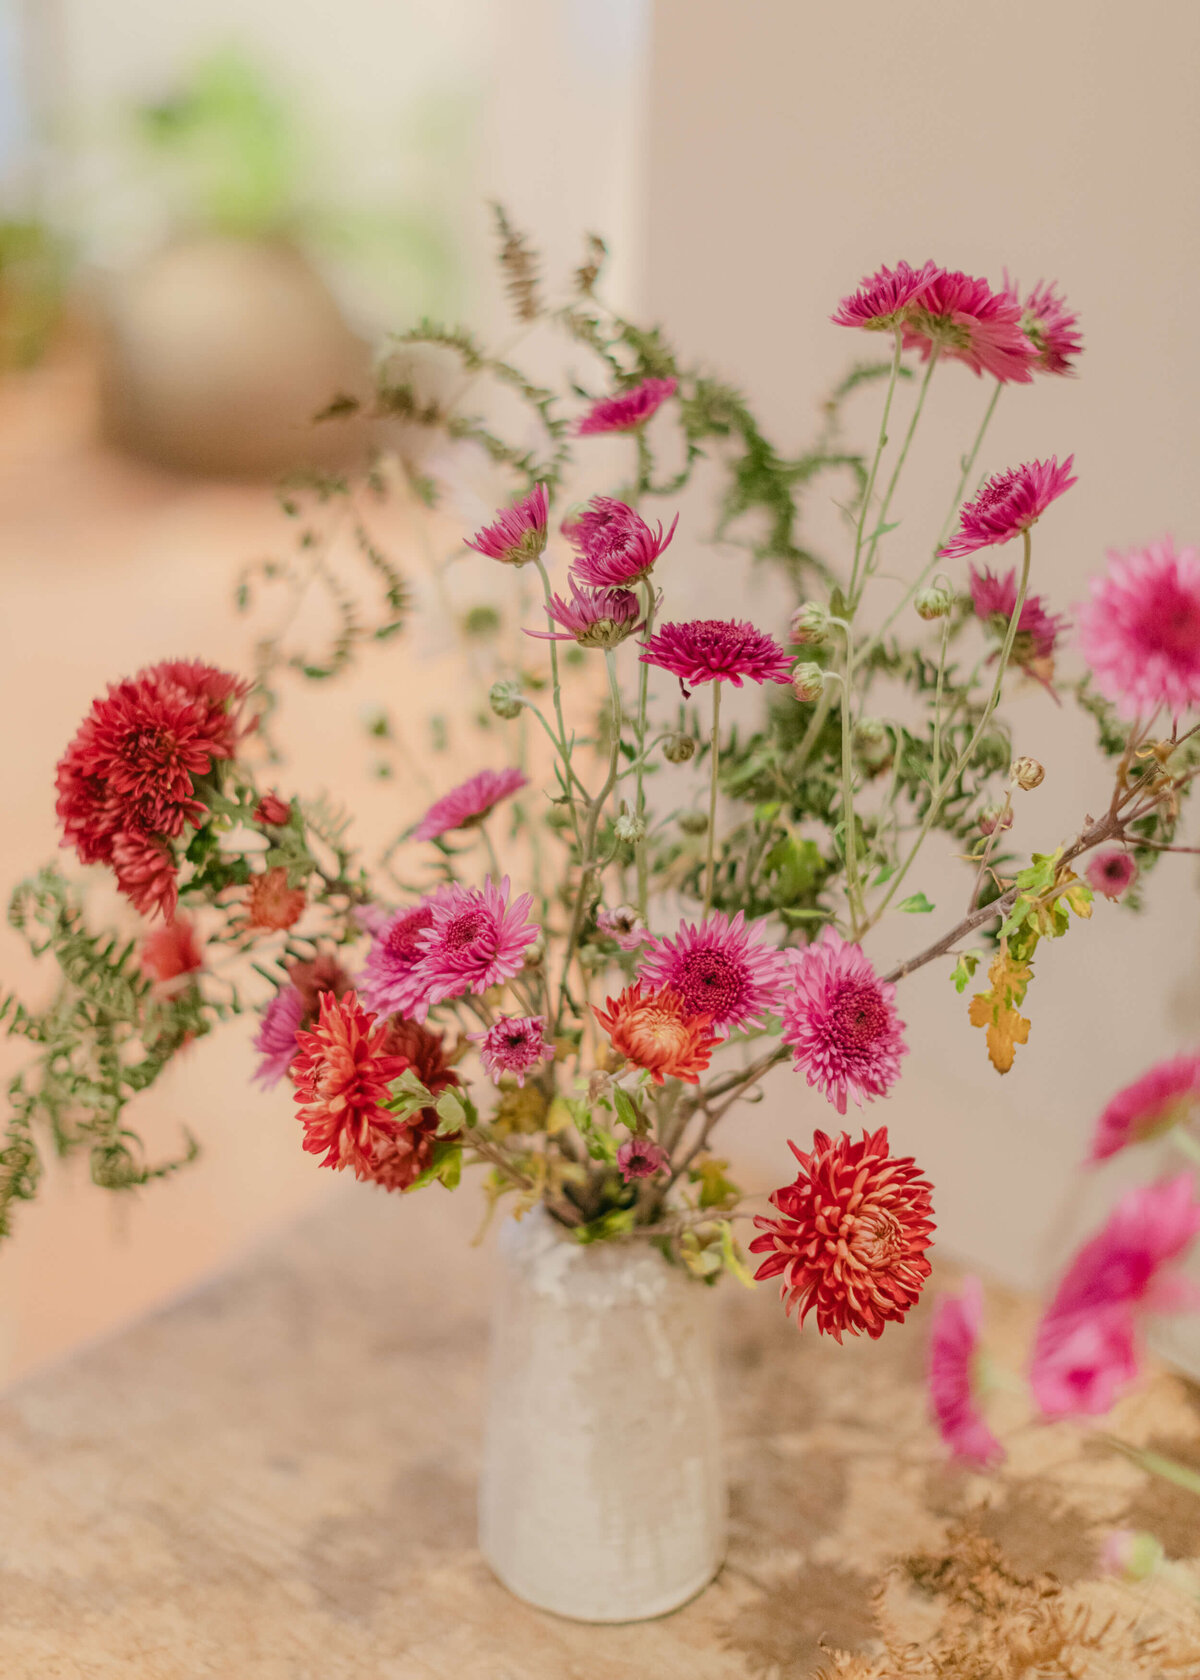 chloe-winstanley-events-heckfield-place-interiors-seasonal-flowers-pink